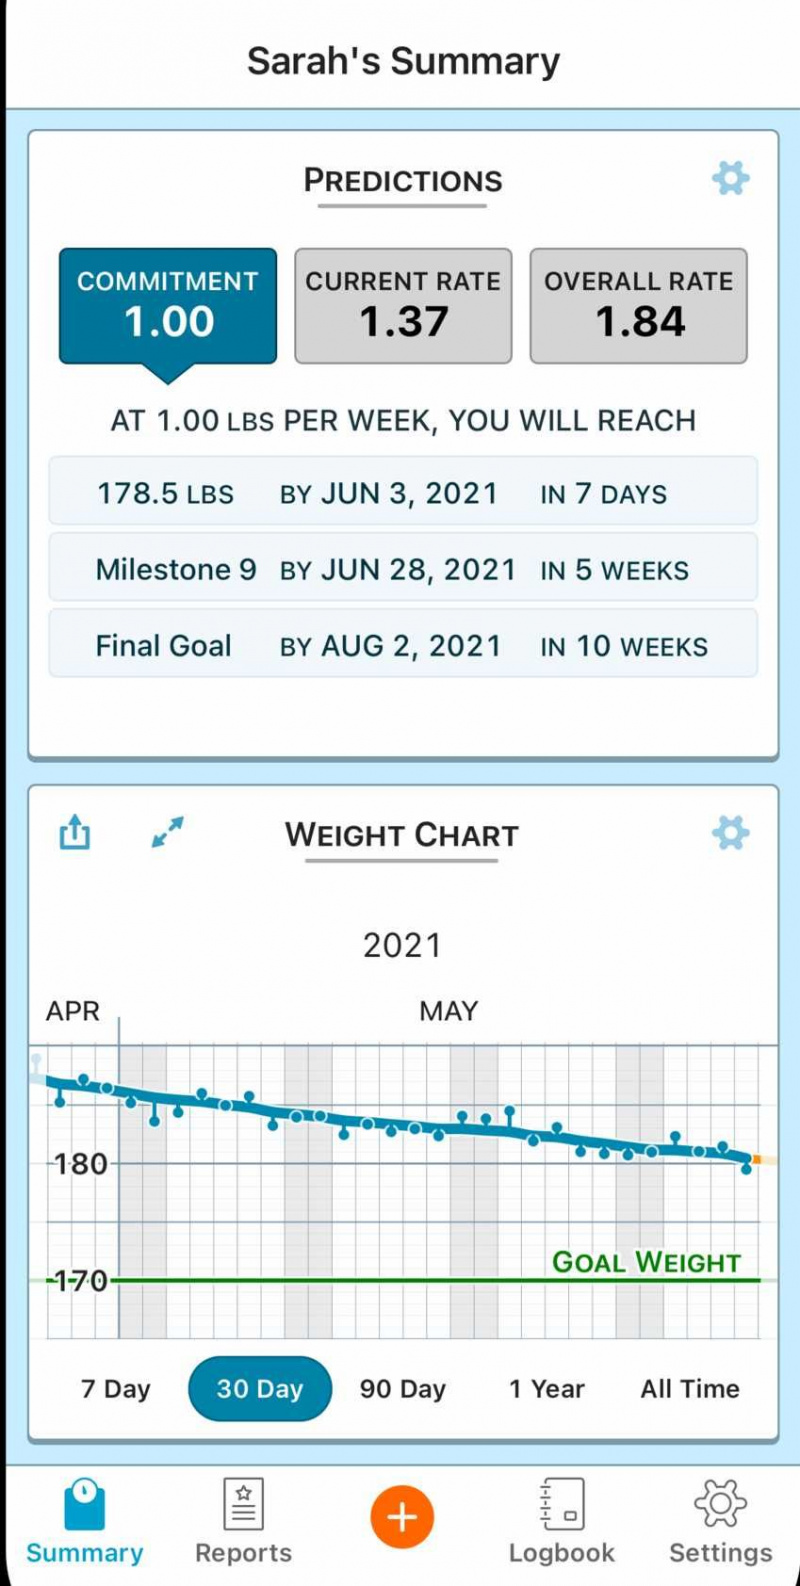   Δείτε ένα γρήγορο στιγμιότυπο του ταξιδιού σας για απώλεια βάρους, παρακολουθήστε μεμονωμένα σημεία δεδομένων και εξάγετε τα δεδομένα σας με ευκολία στο Libra στο Android και στο Happy Scale στο iPhone